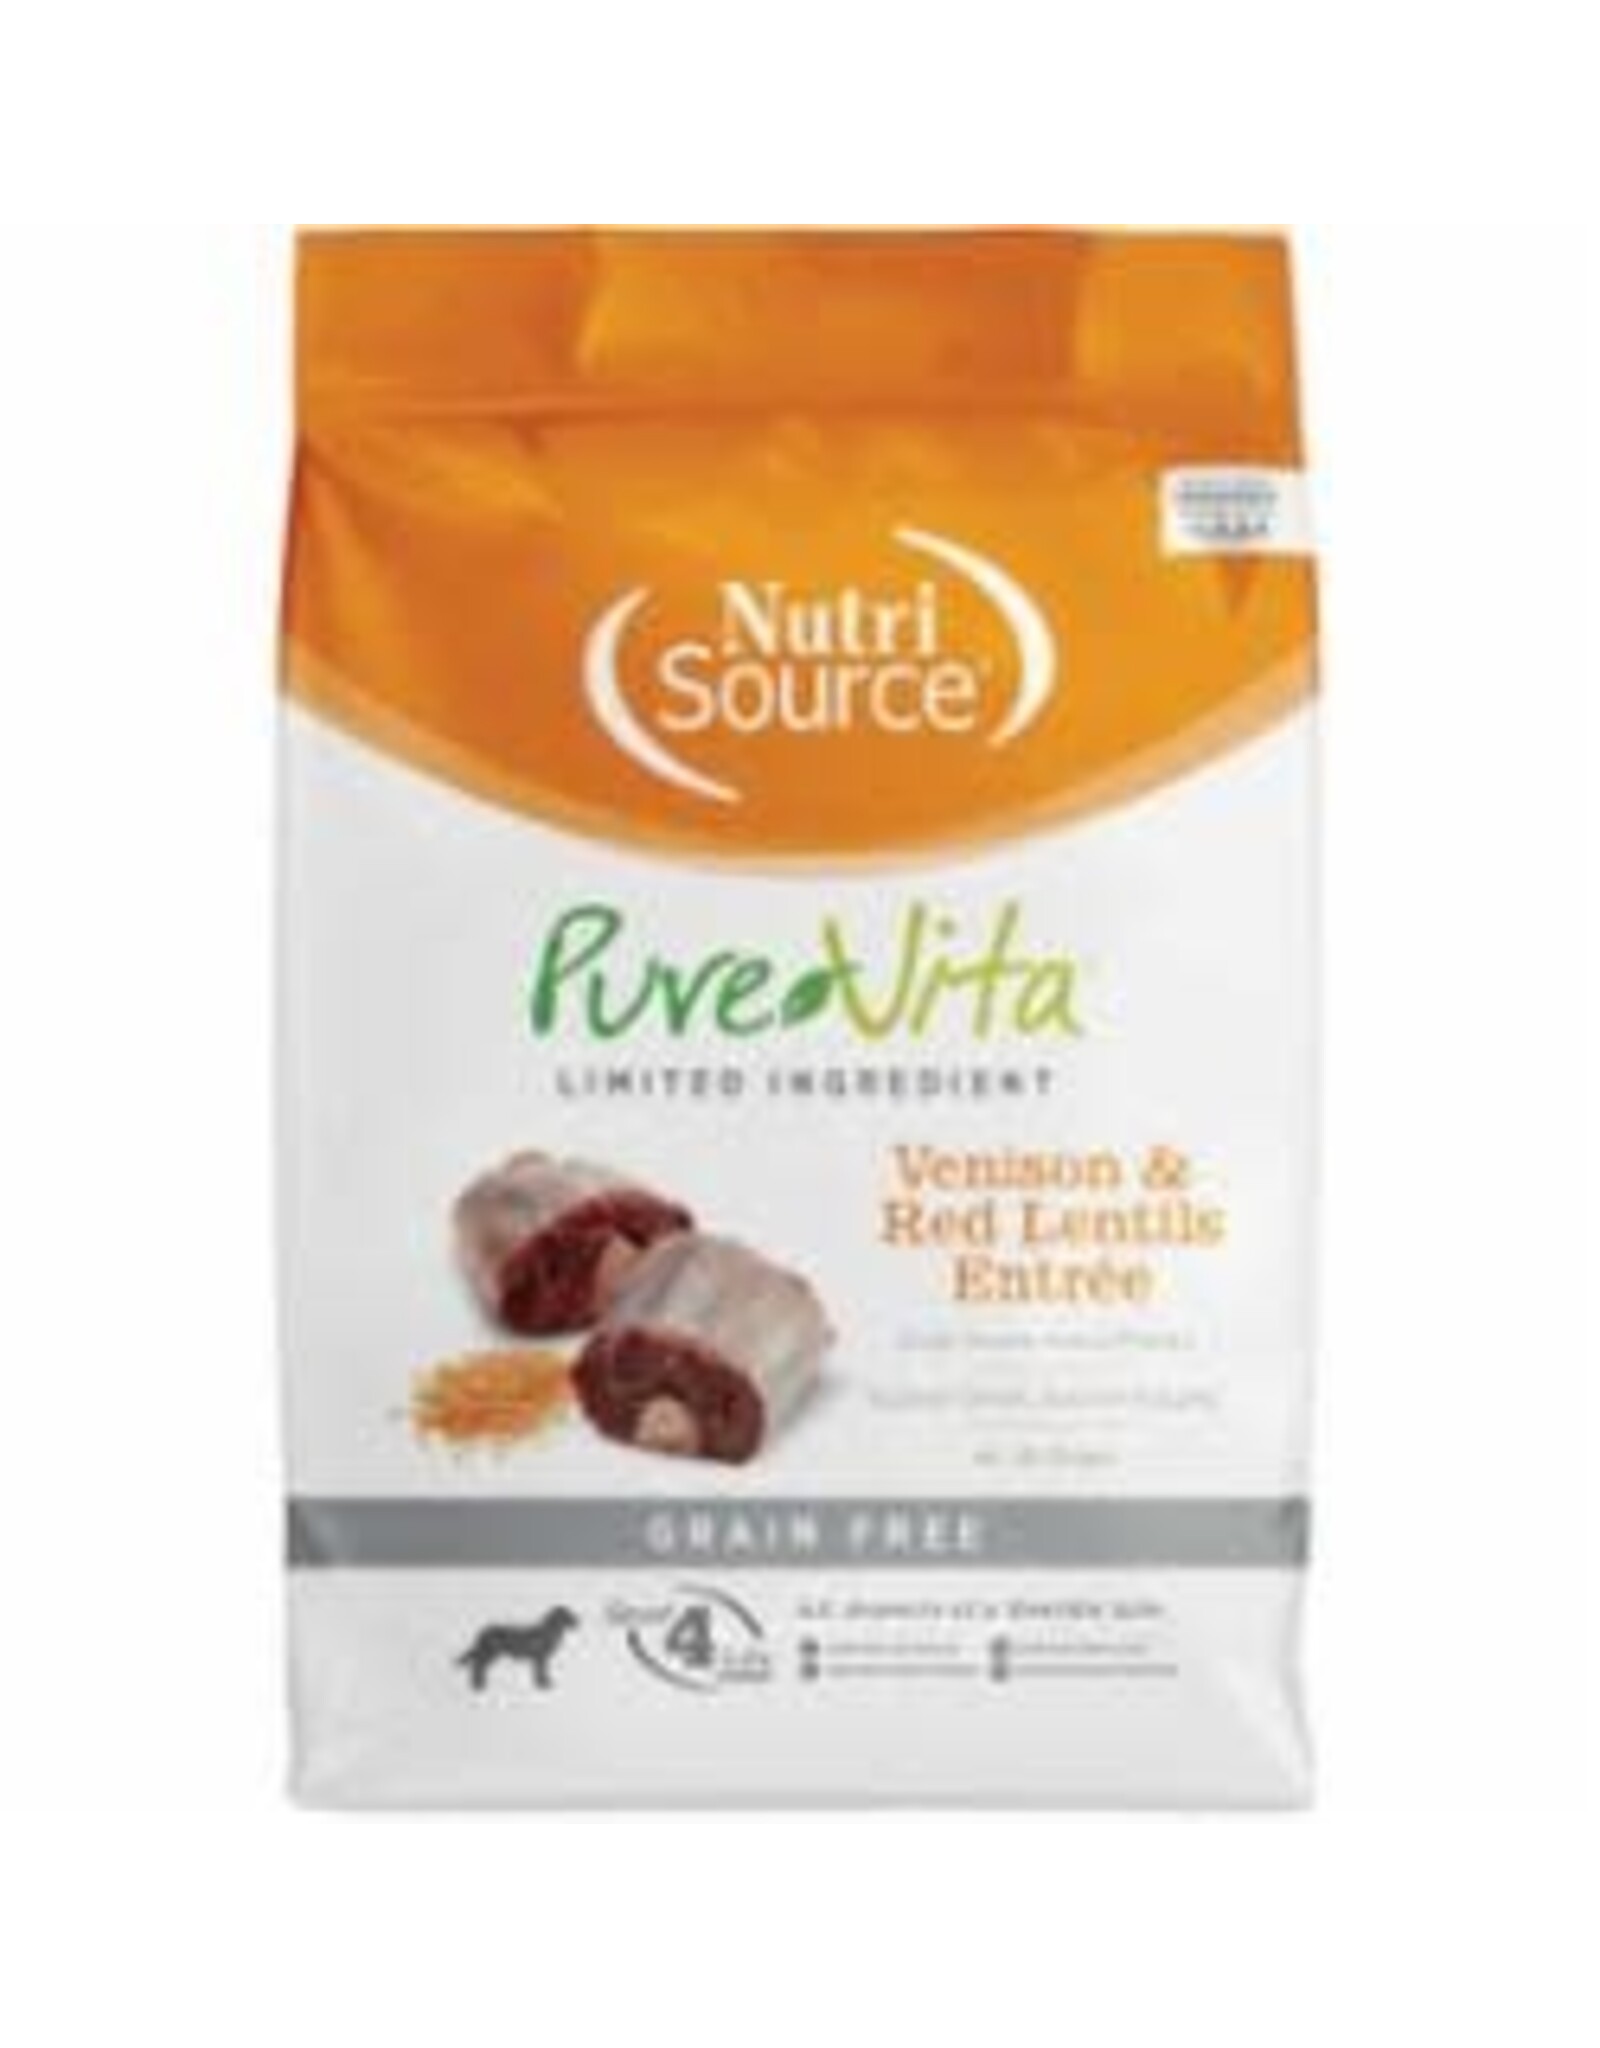 NutriSource Pet Foods PUREVITA DOG VENISON & RED LENTILS ENTRÉE